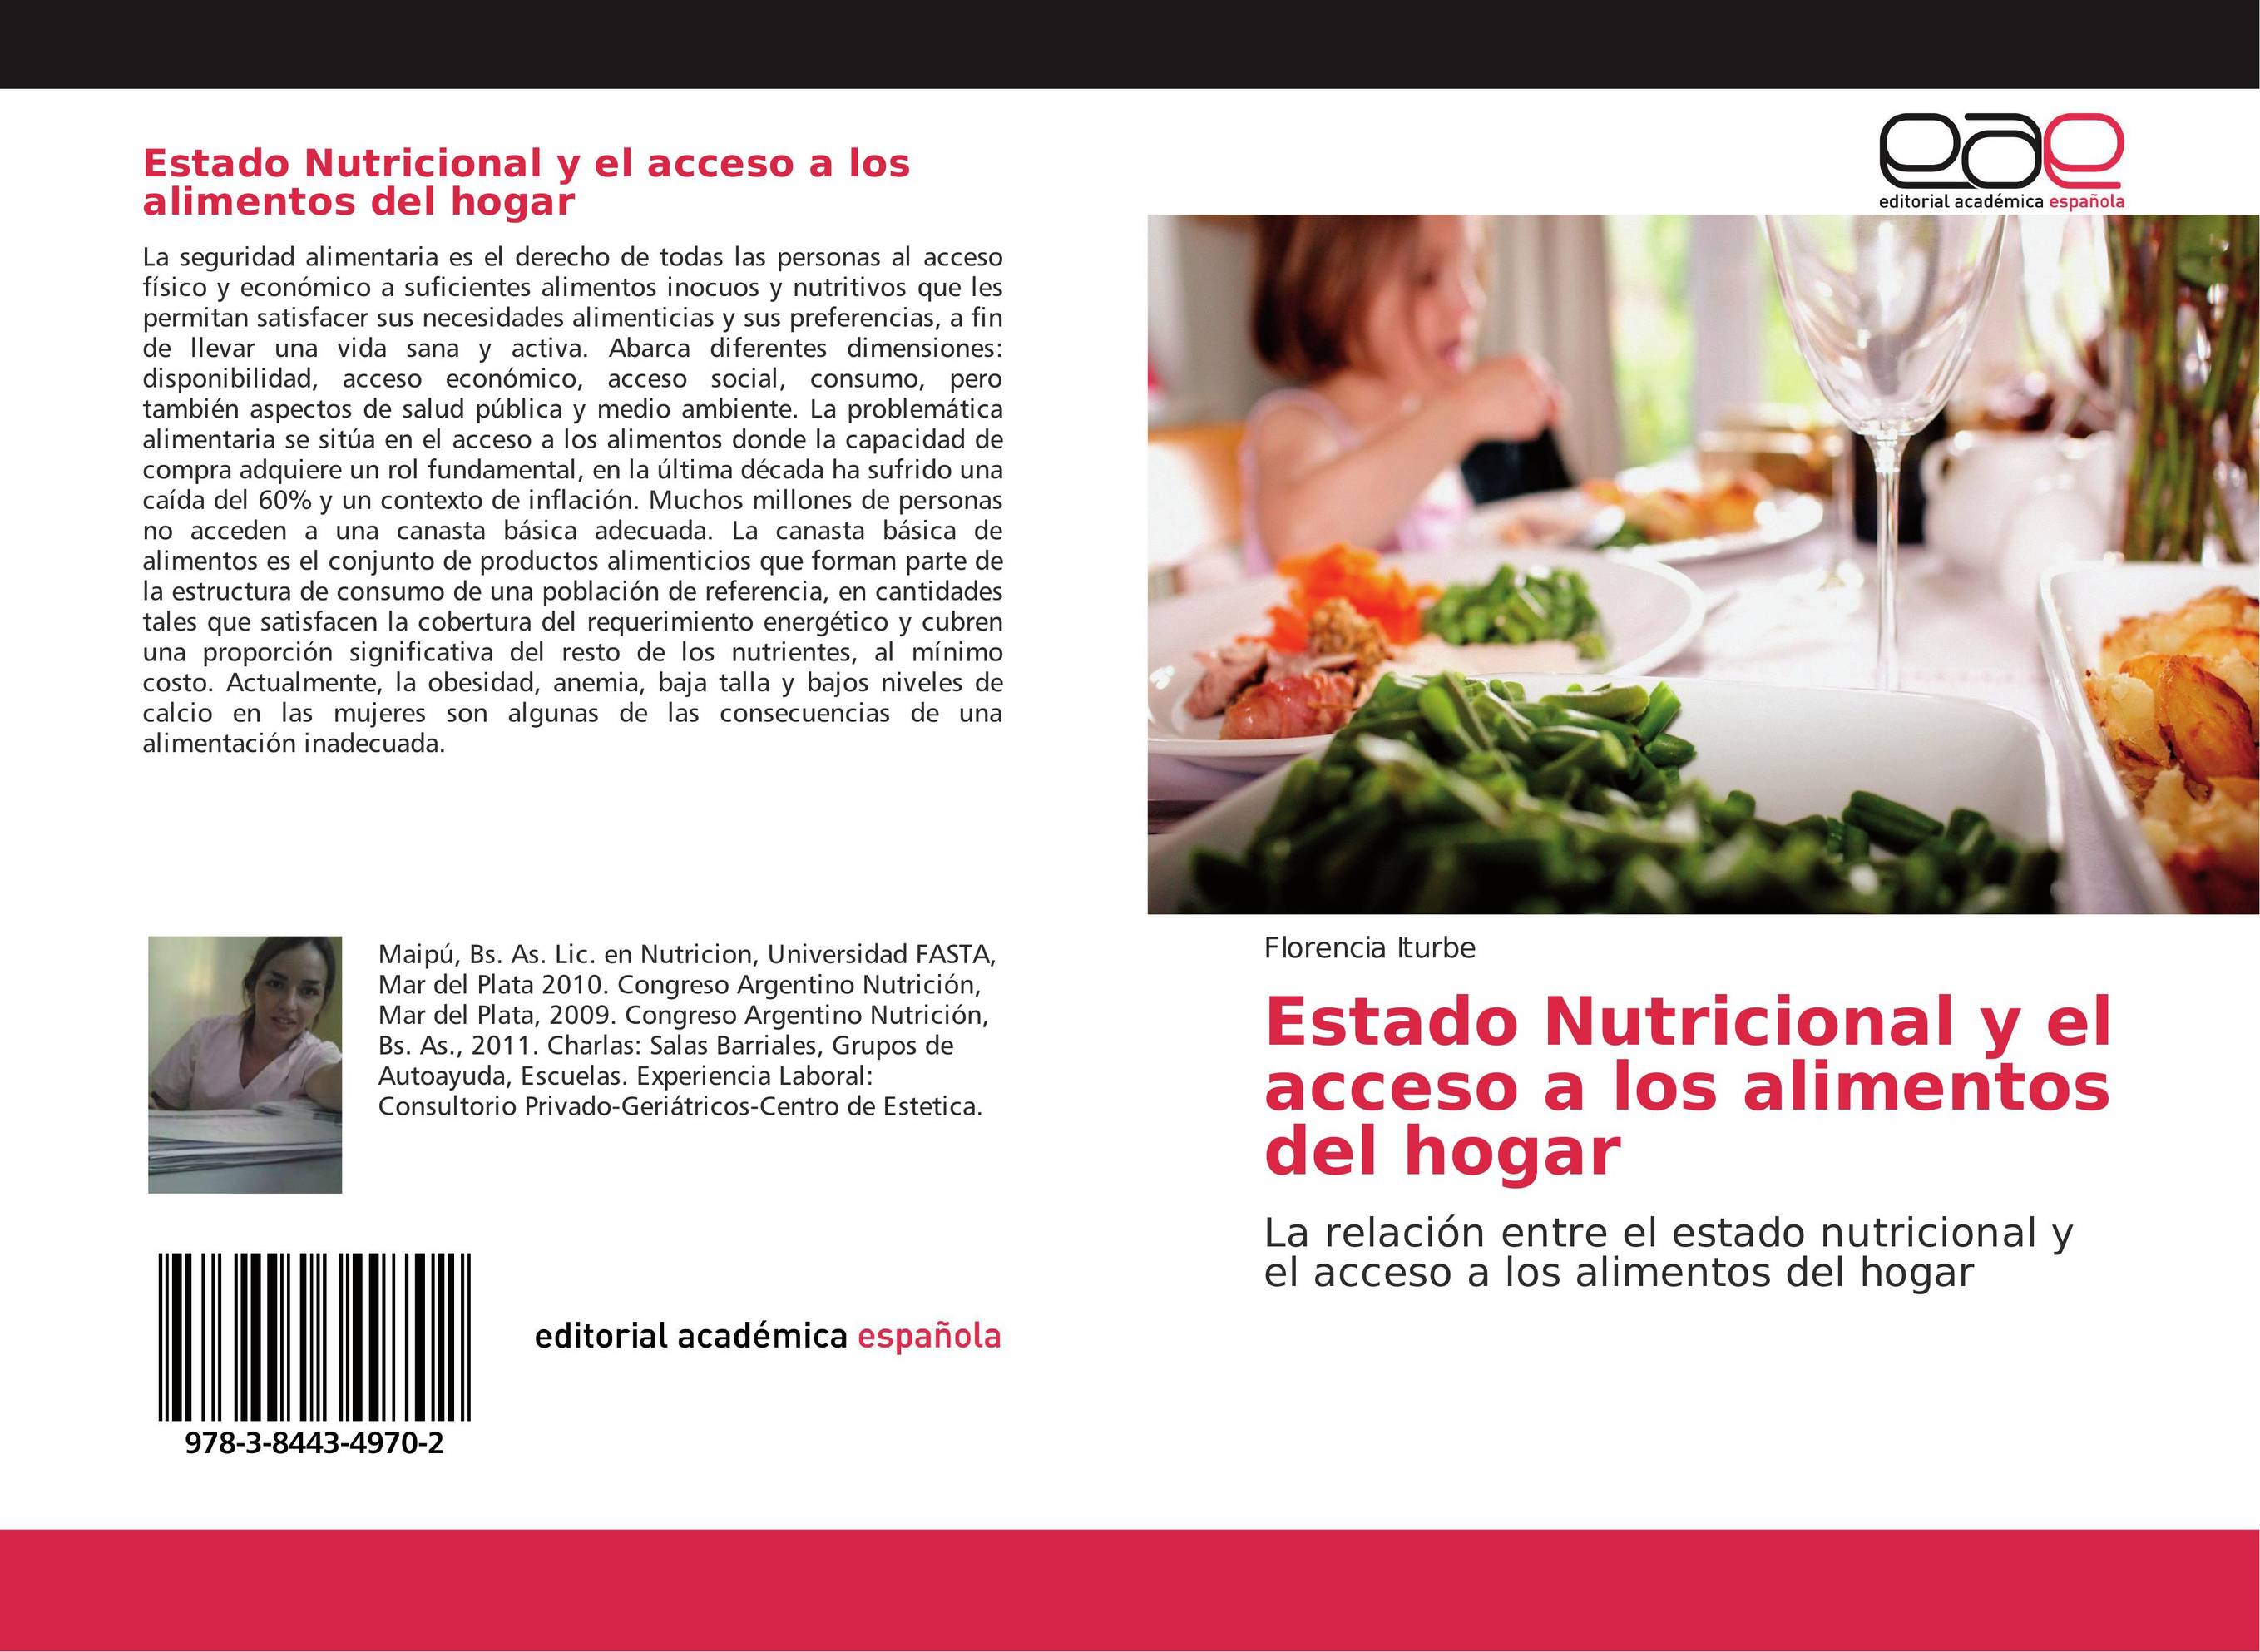 Estado Nutricional y el acceso a los alimentos del hogar